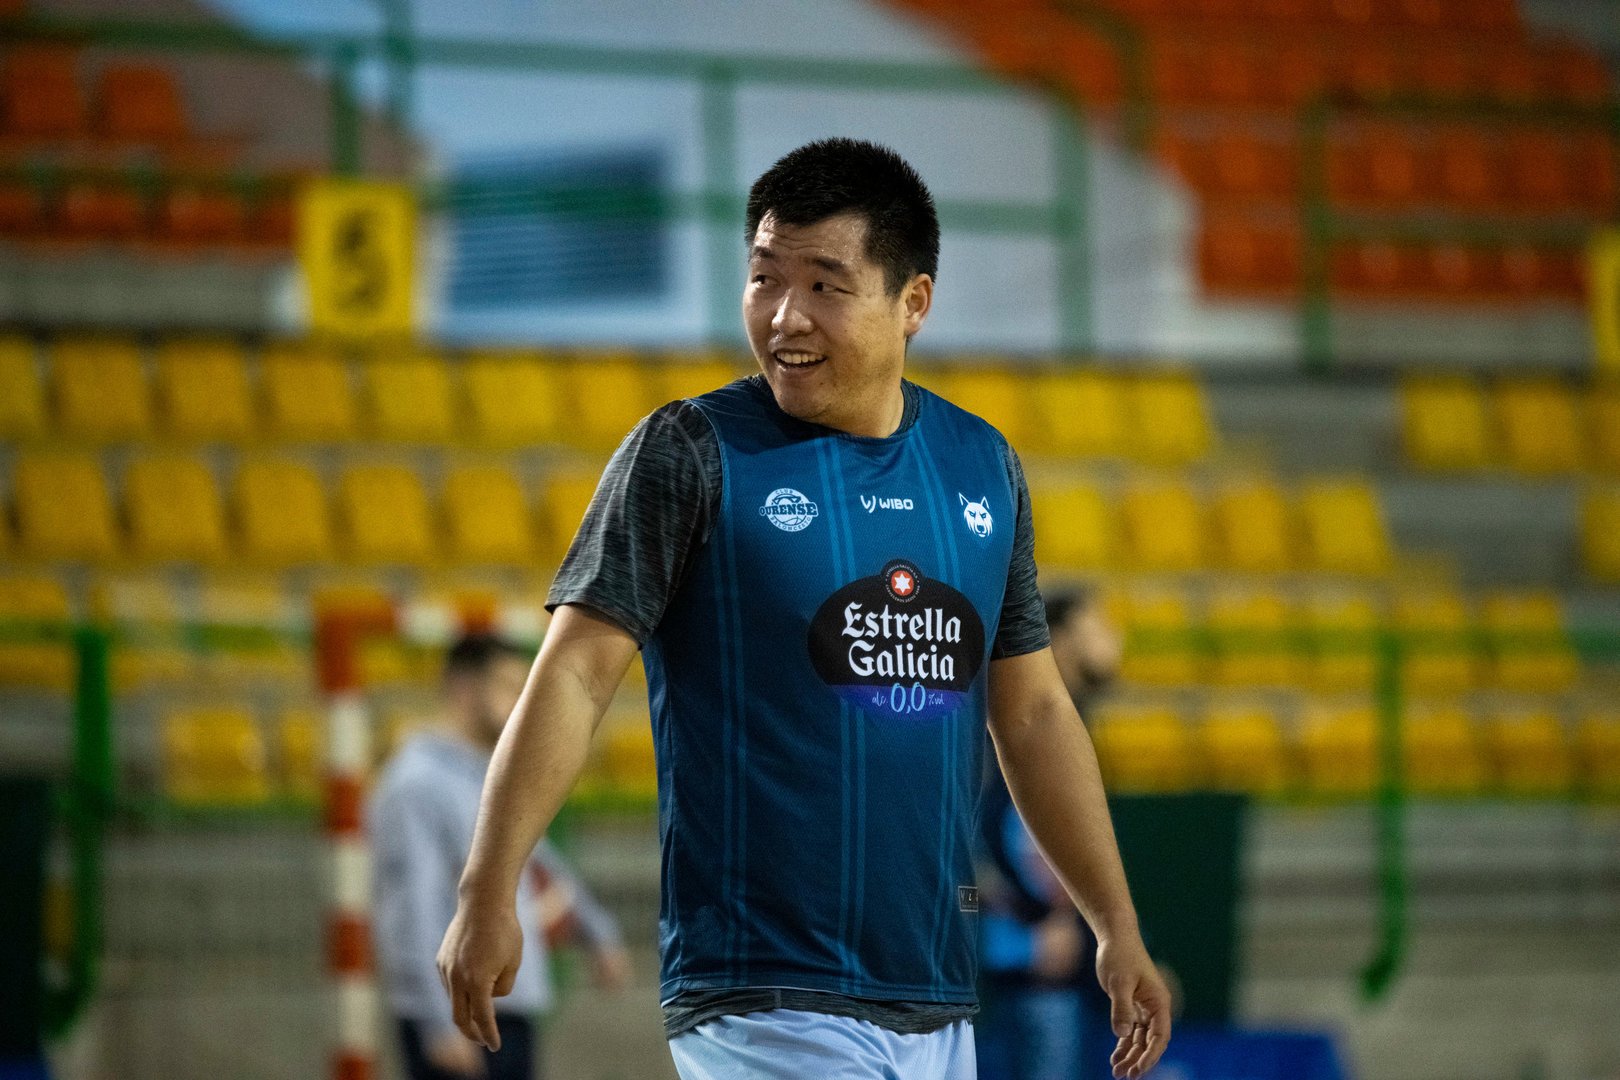 El jugador chino del COB, Bolong Zheng, en el entrenamiento de ayer por la tarde en el Pazo.
FOTO: ÓSCAR PINAL